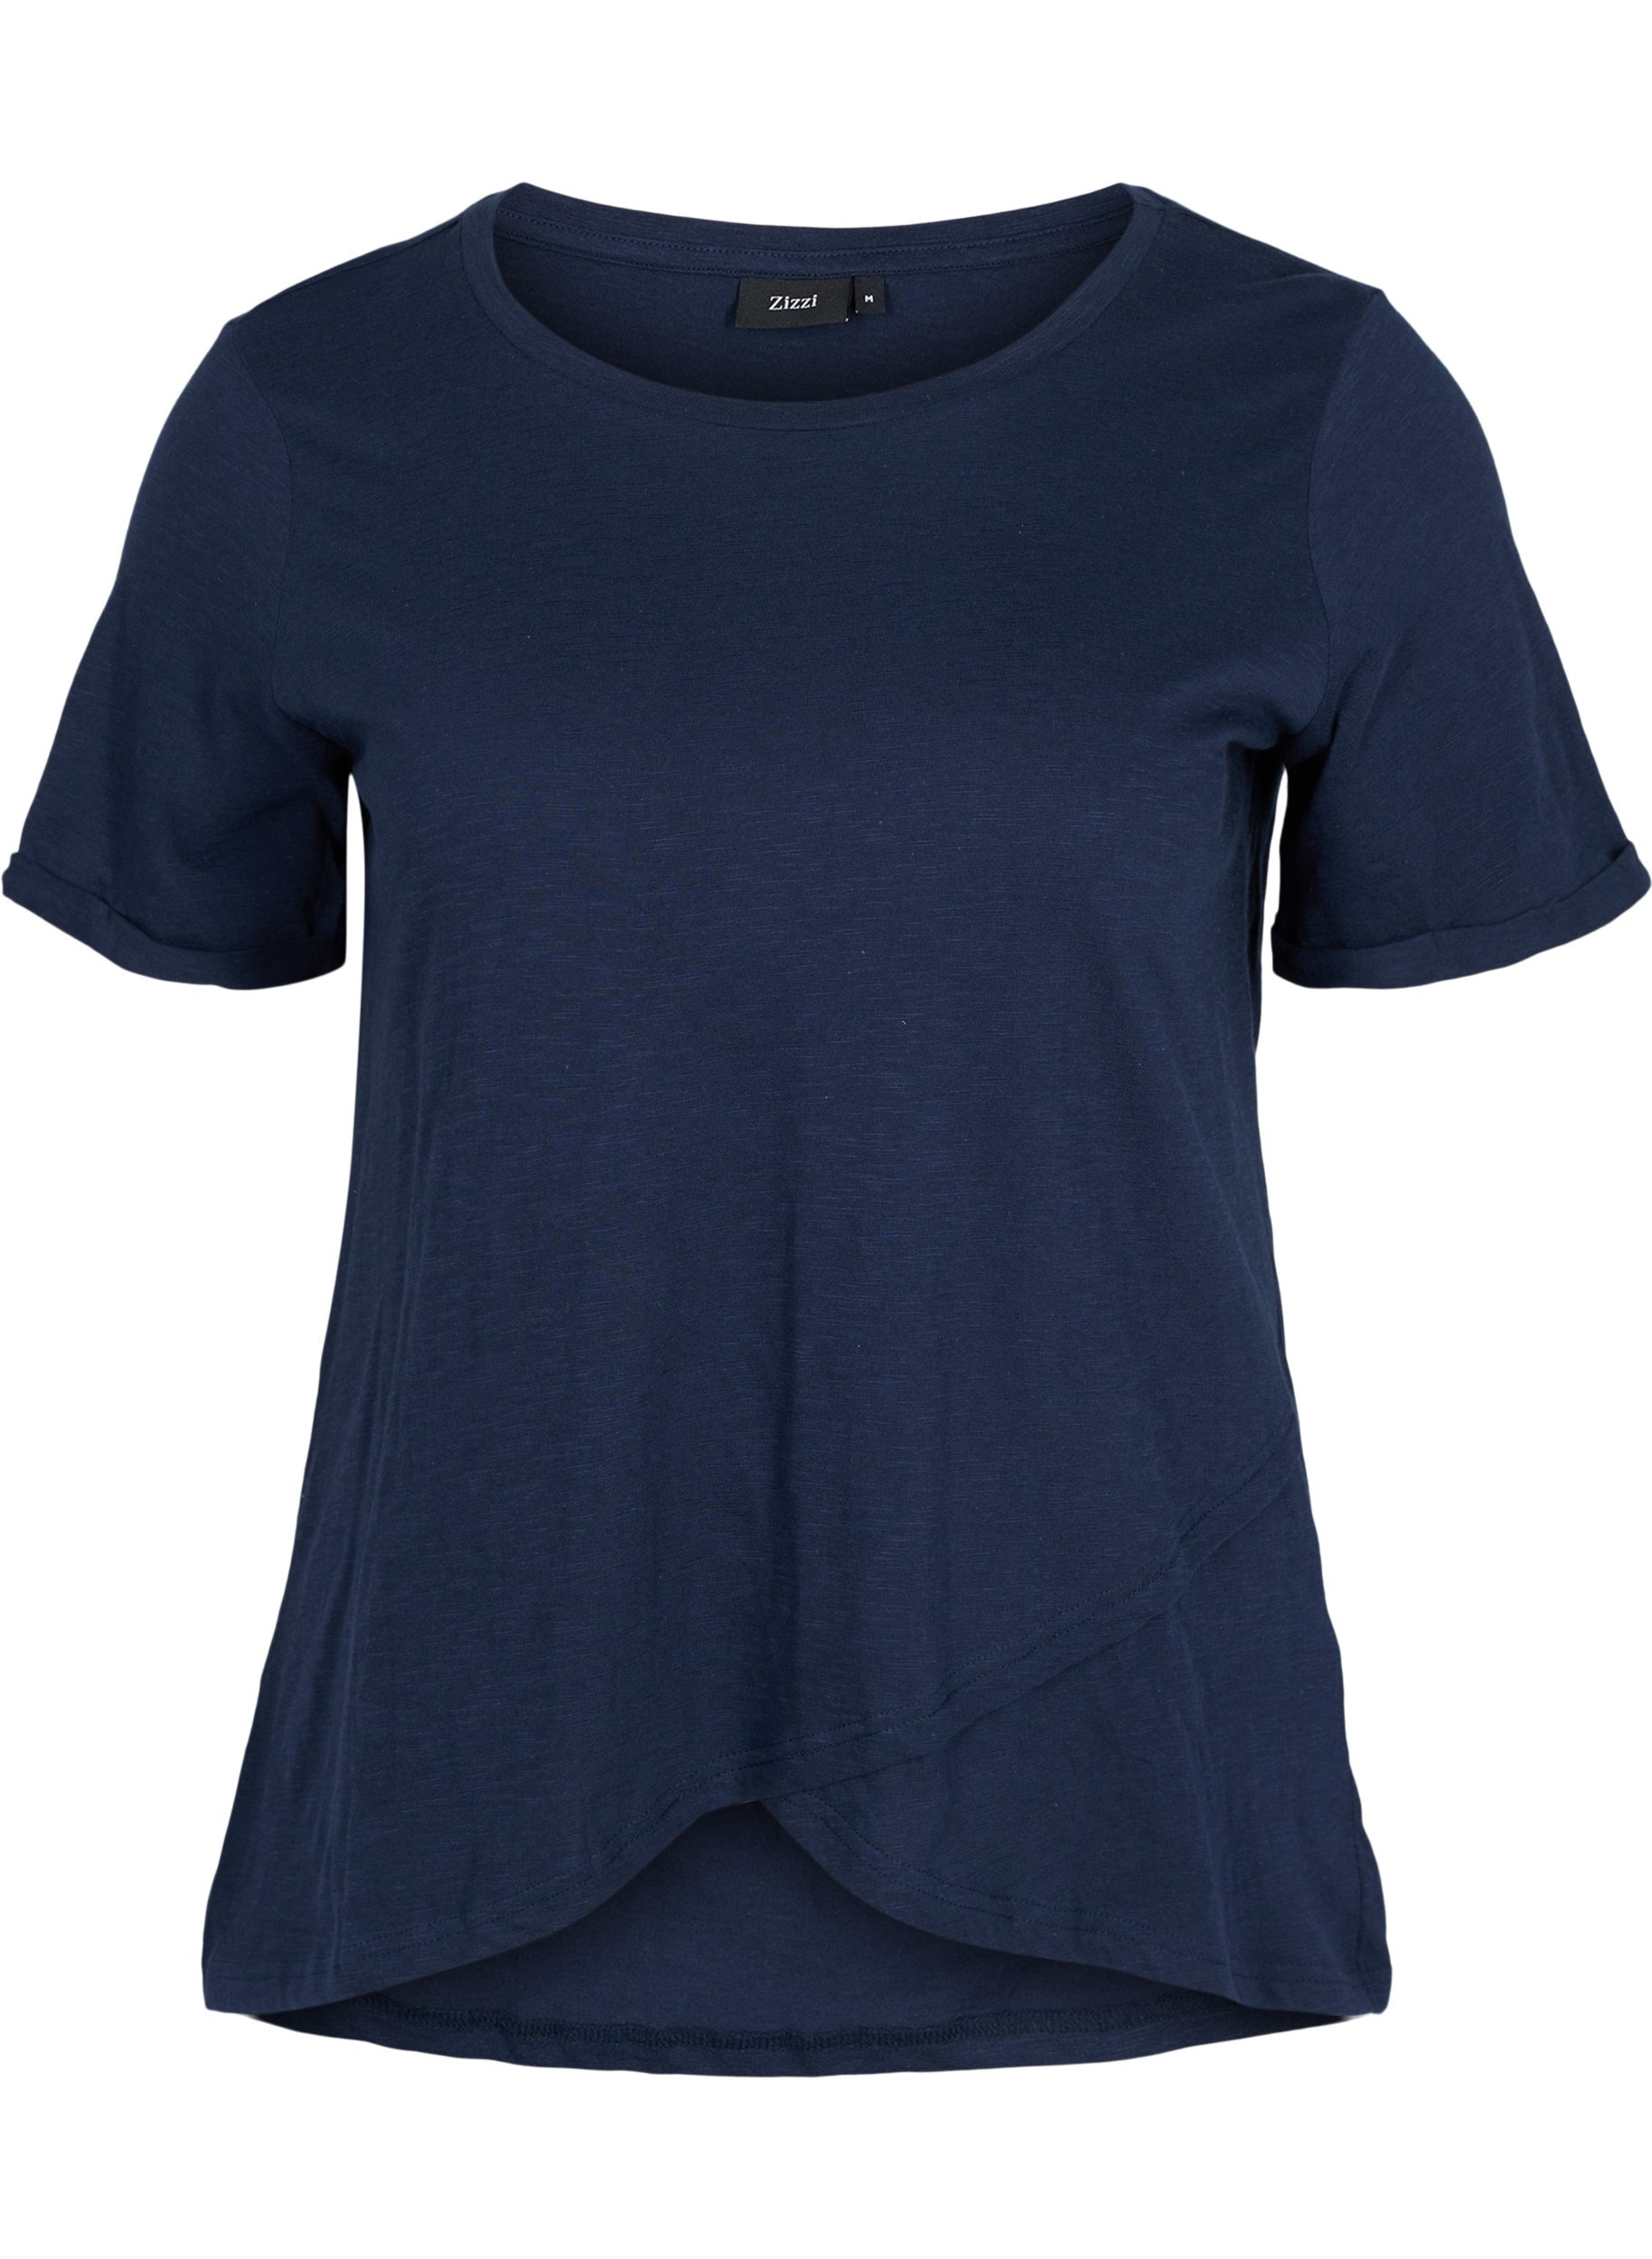 Baumwoll-T-Shirt mit kurzen Ärmeln, Navy Blazer